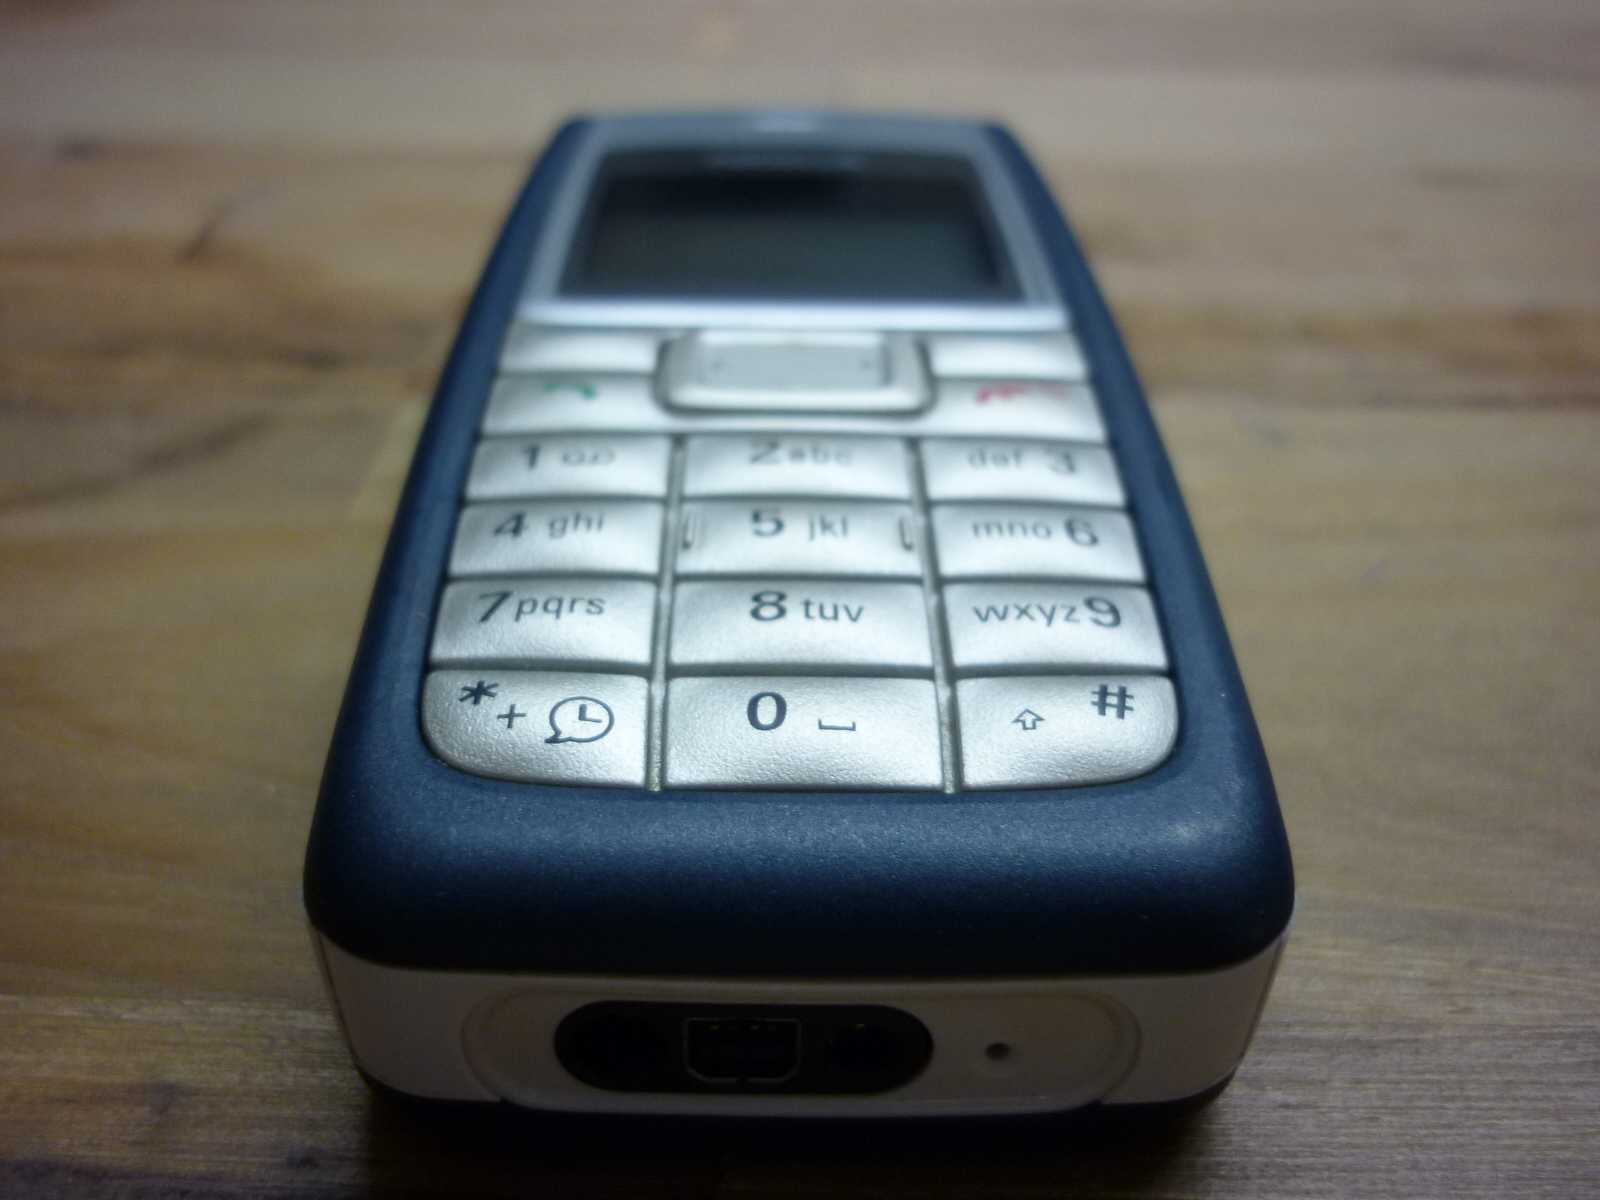 Телефон nokia 5140 — купить, цена и характеристики, отзывы